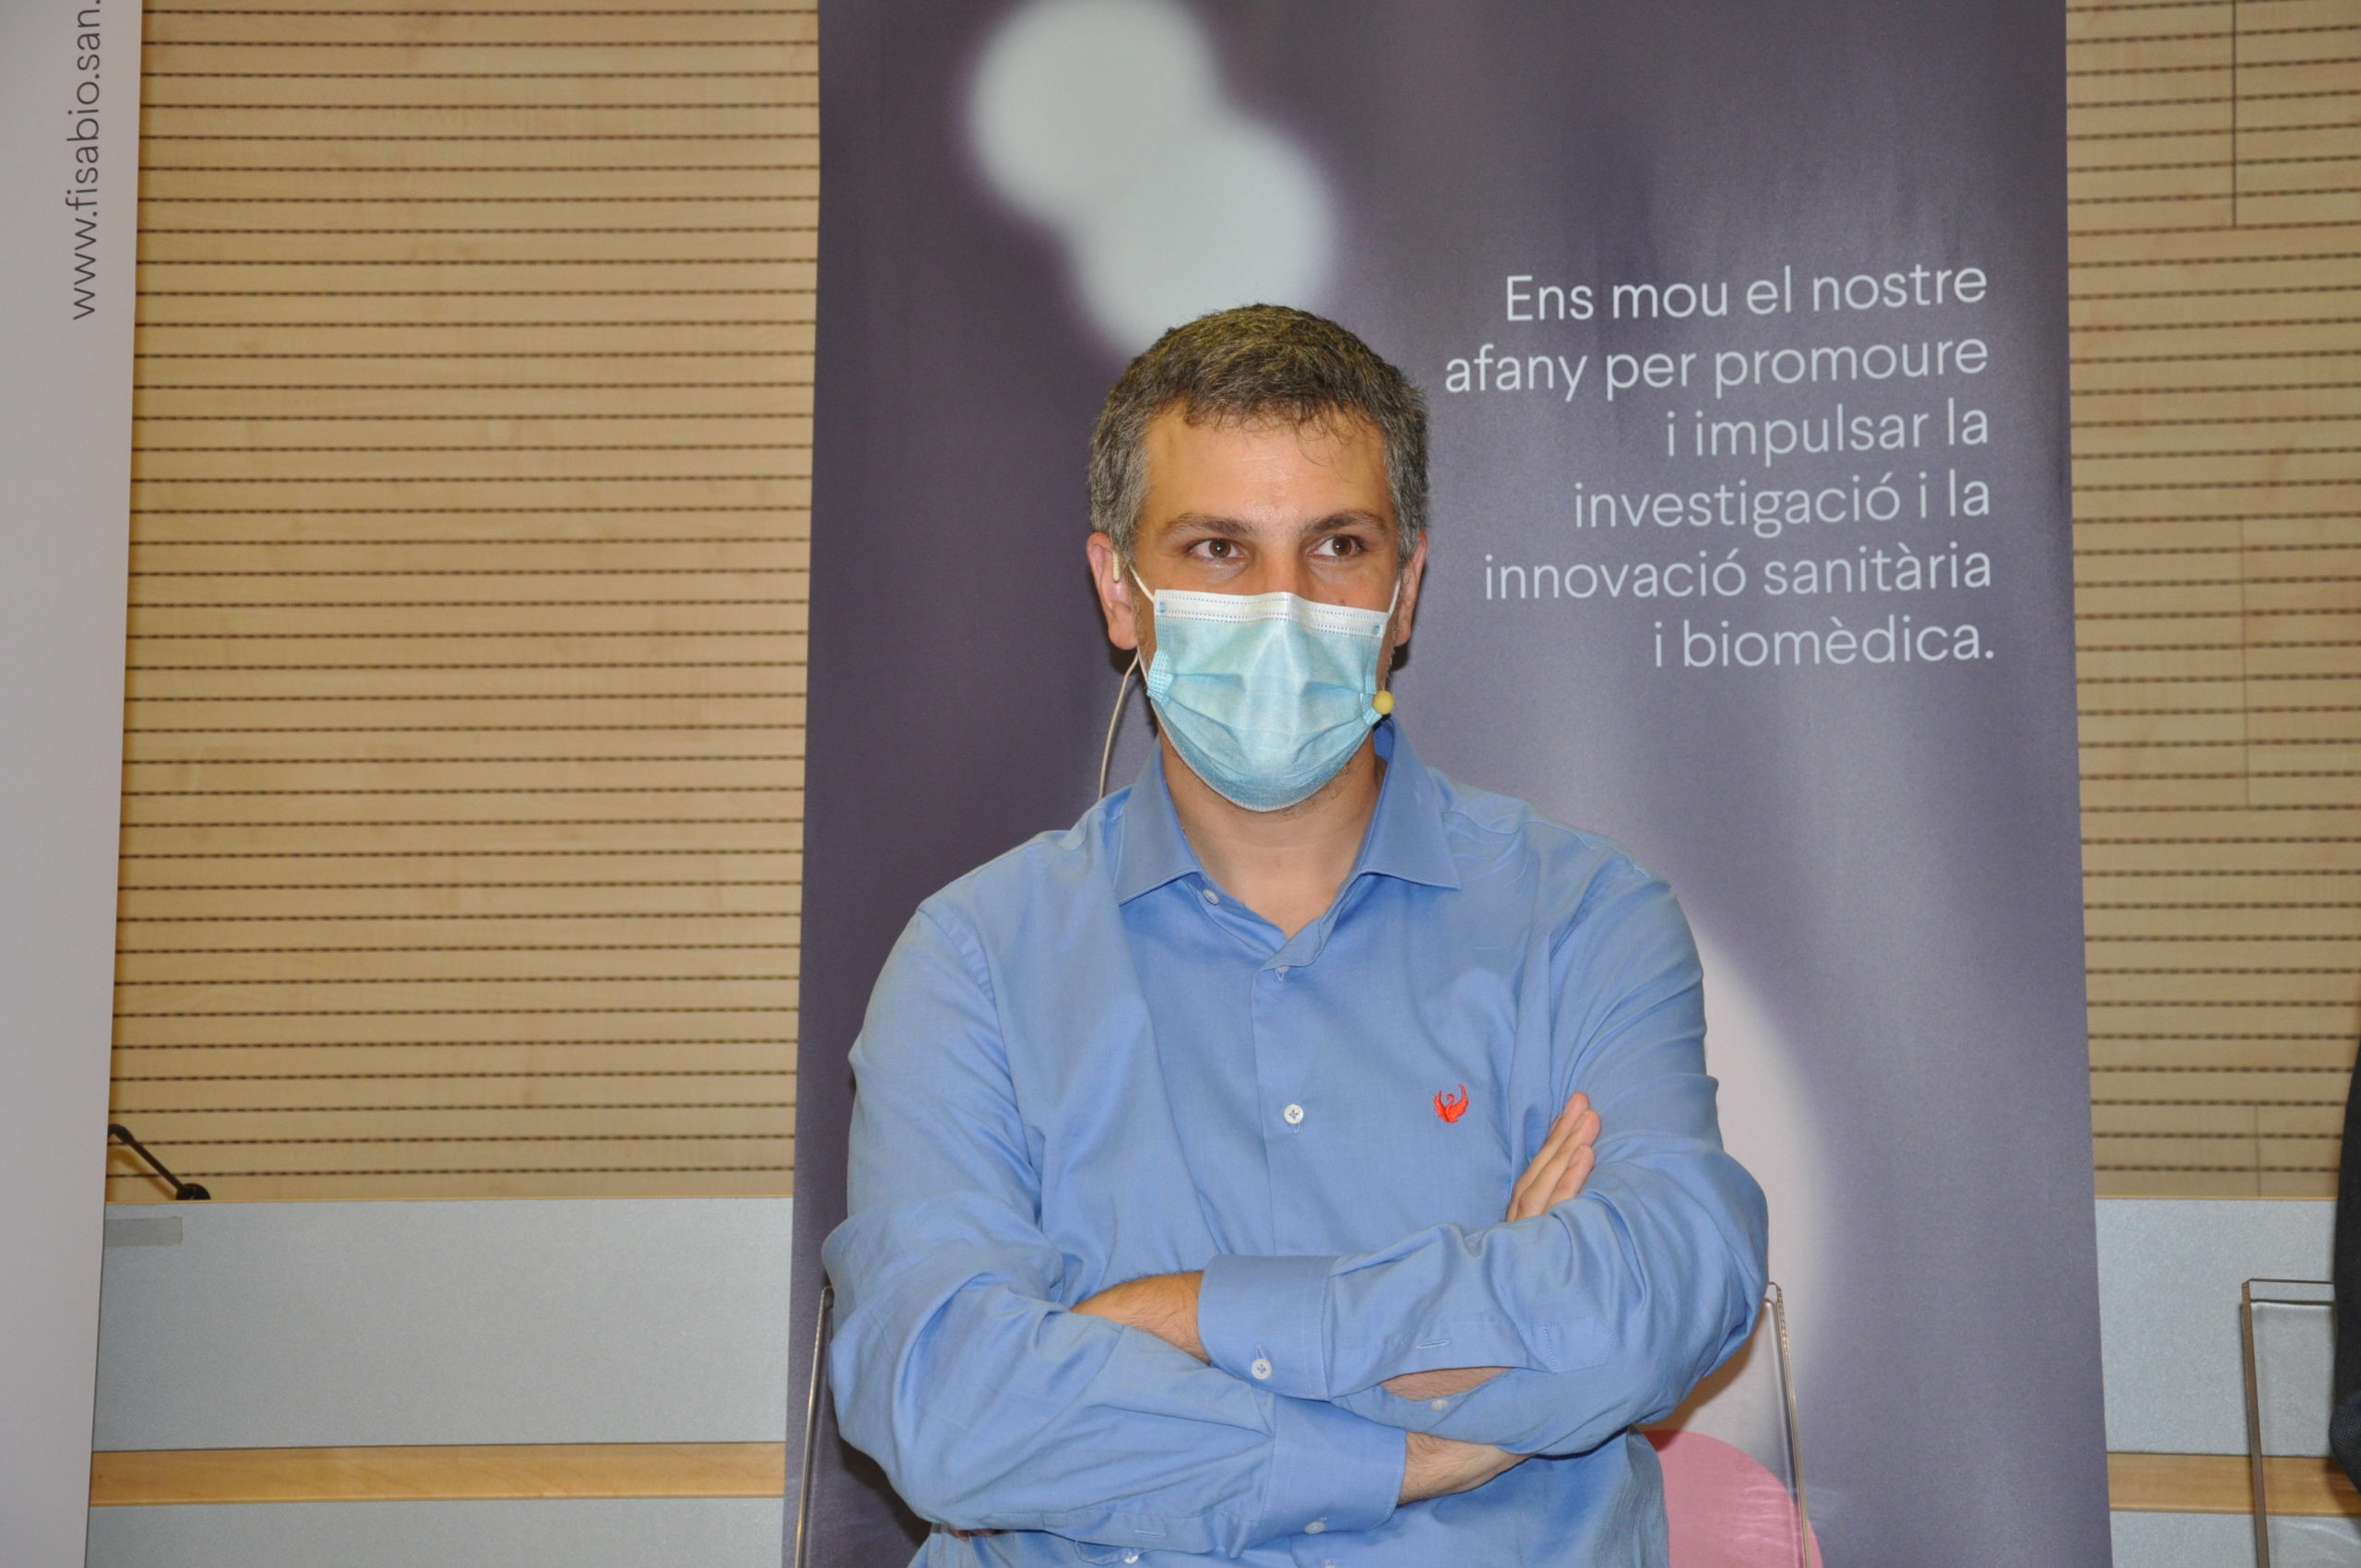 Moderador del Workshop. Científico-investigador del Consejo Superior de Investigaciones Científicas en el Instituto de Biomedicina de Valencia( CSIC-IBV)